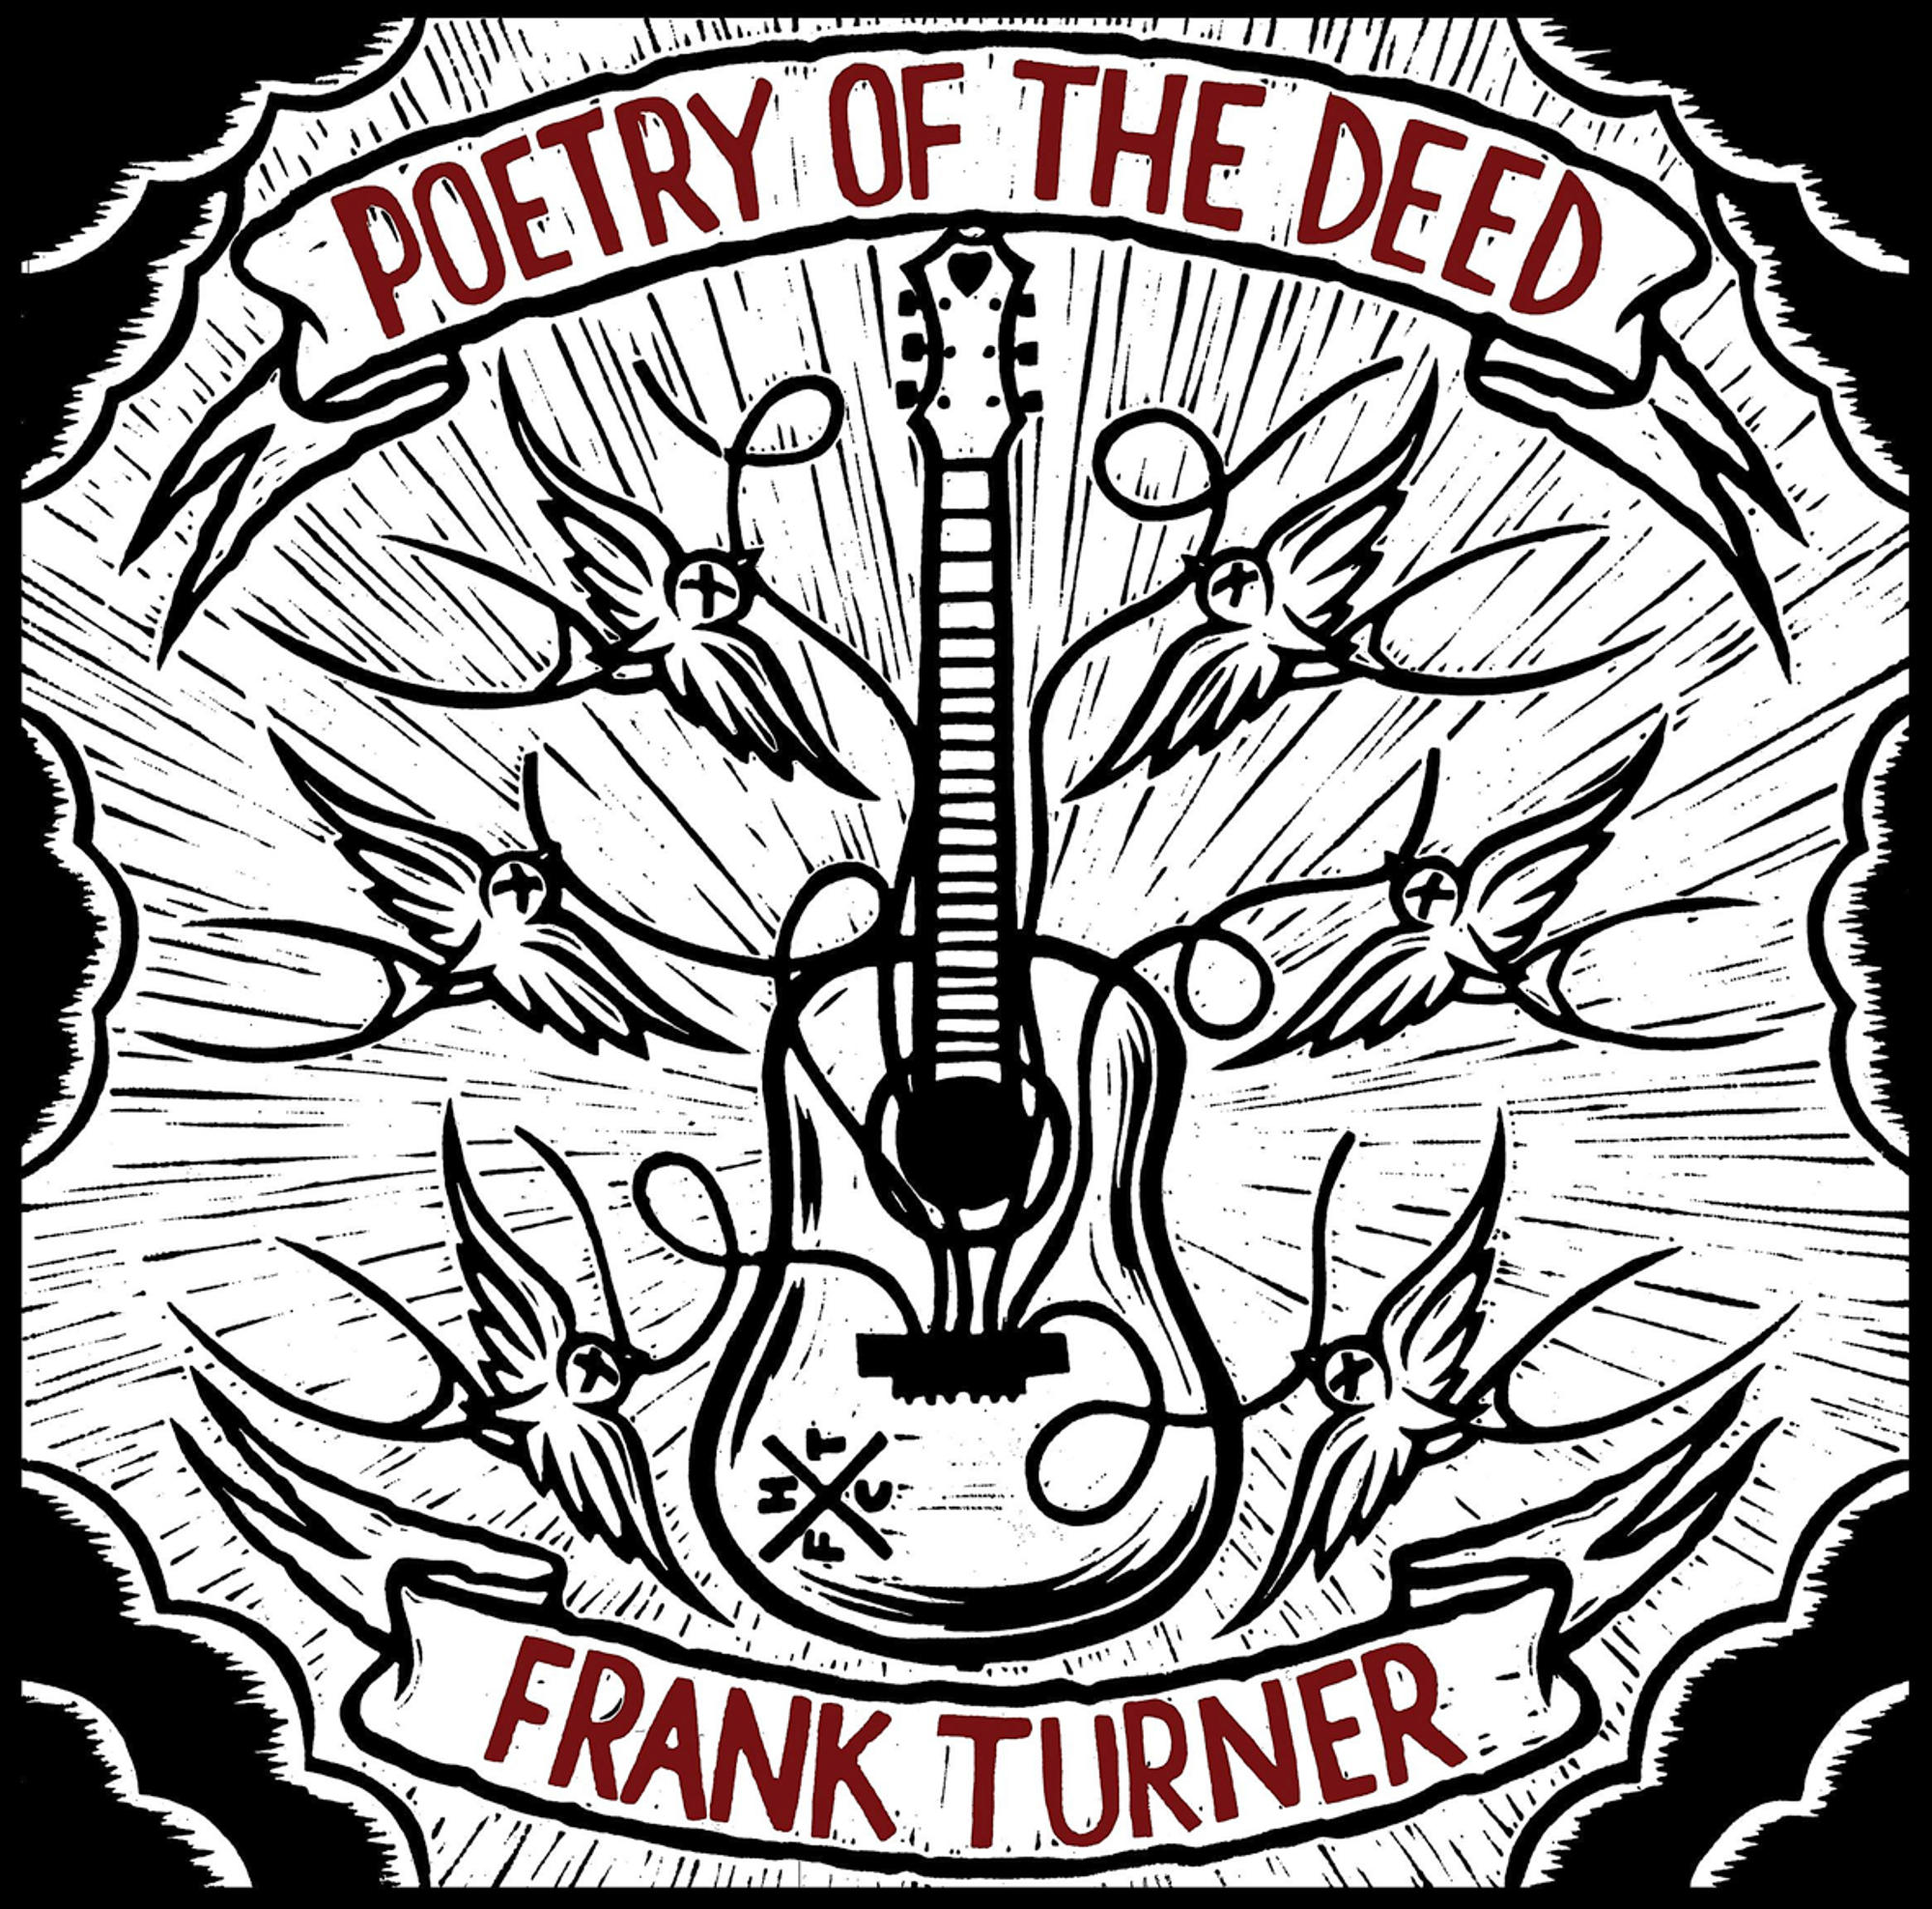 The (CD) Turner Poetry - Frank Deed - Of